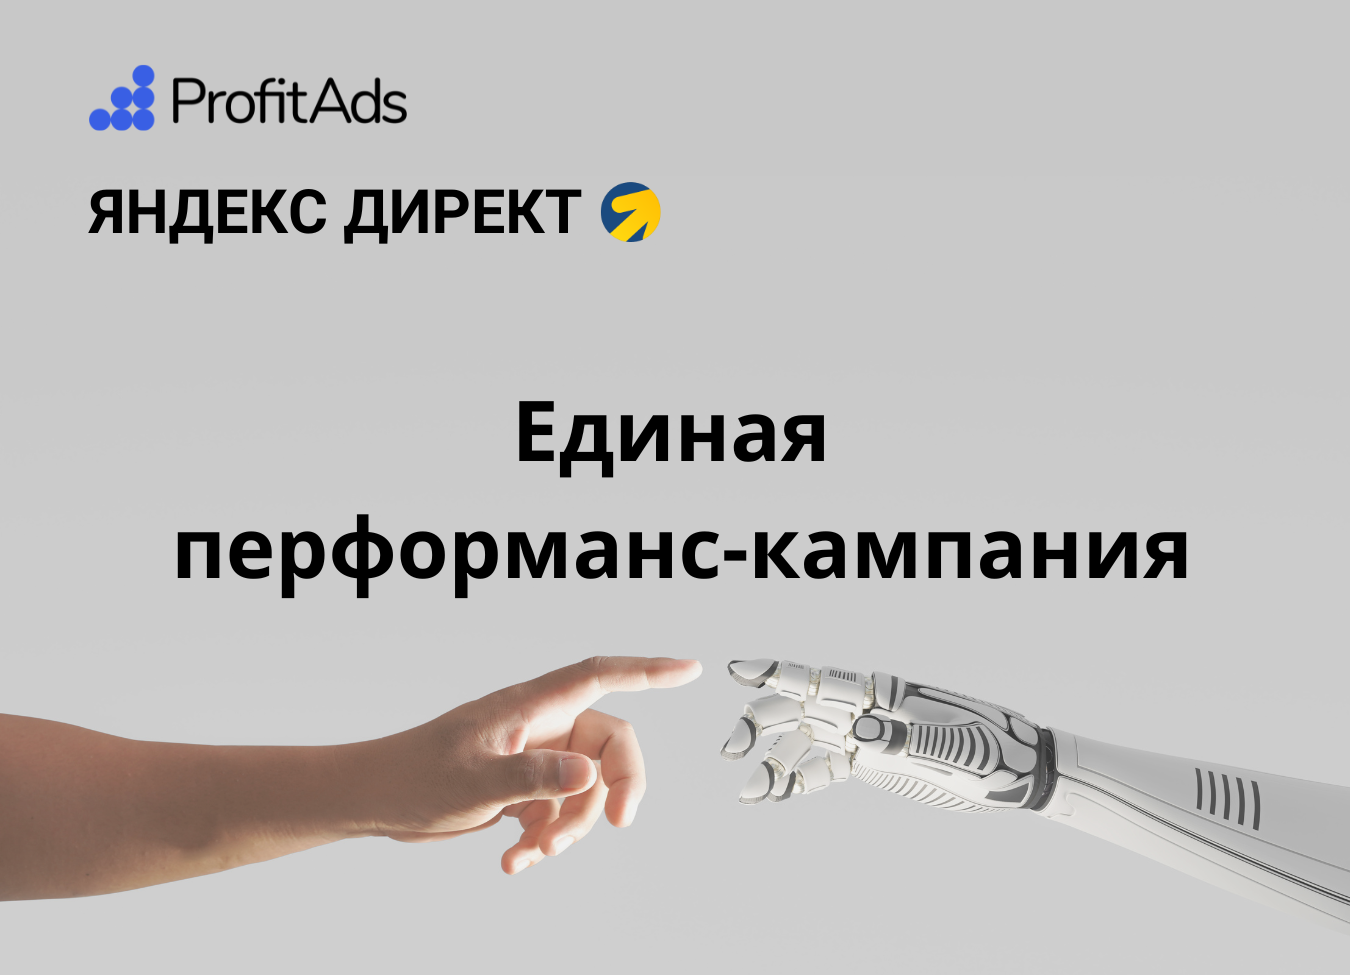 Единая перфоманс-кампания (ЕПК) в Яндекс.Директе